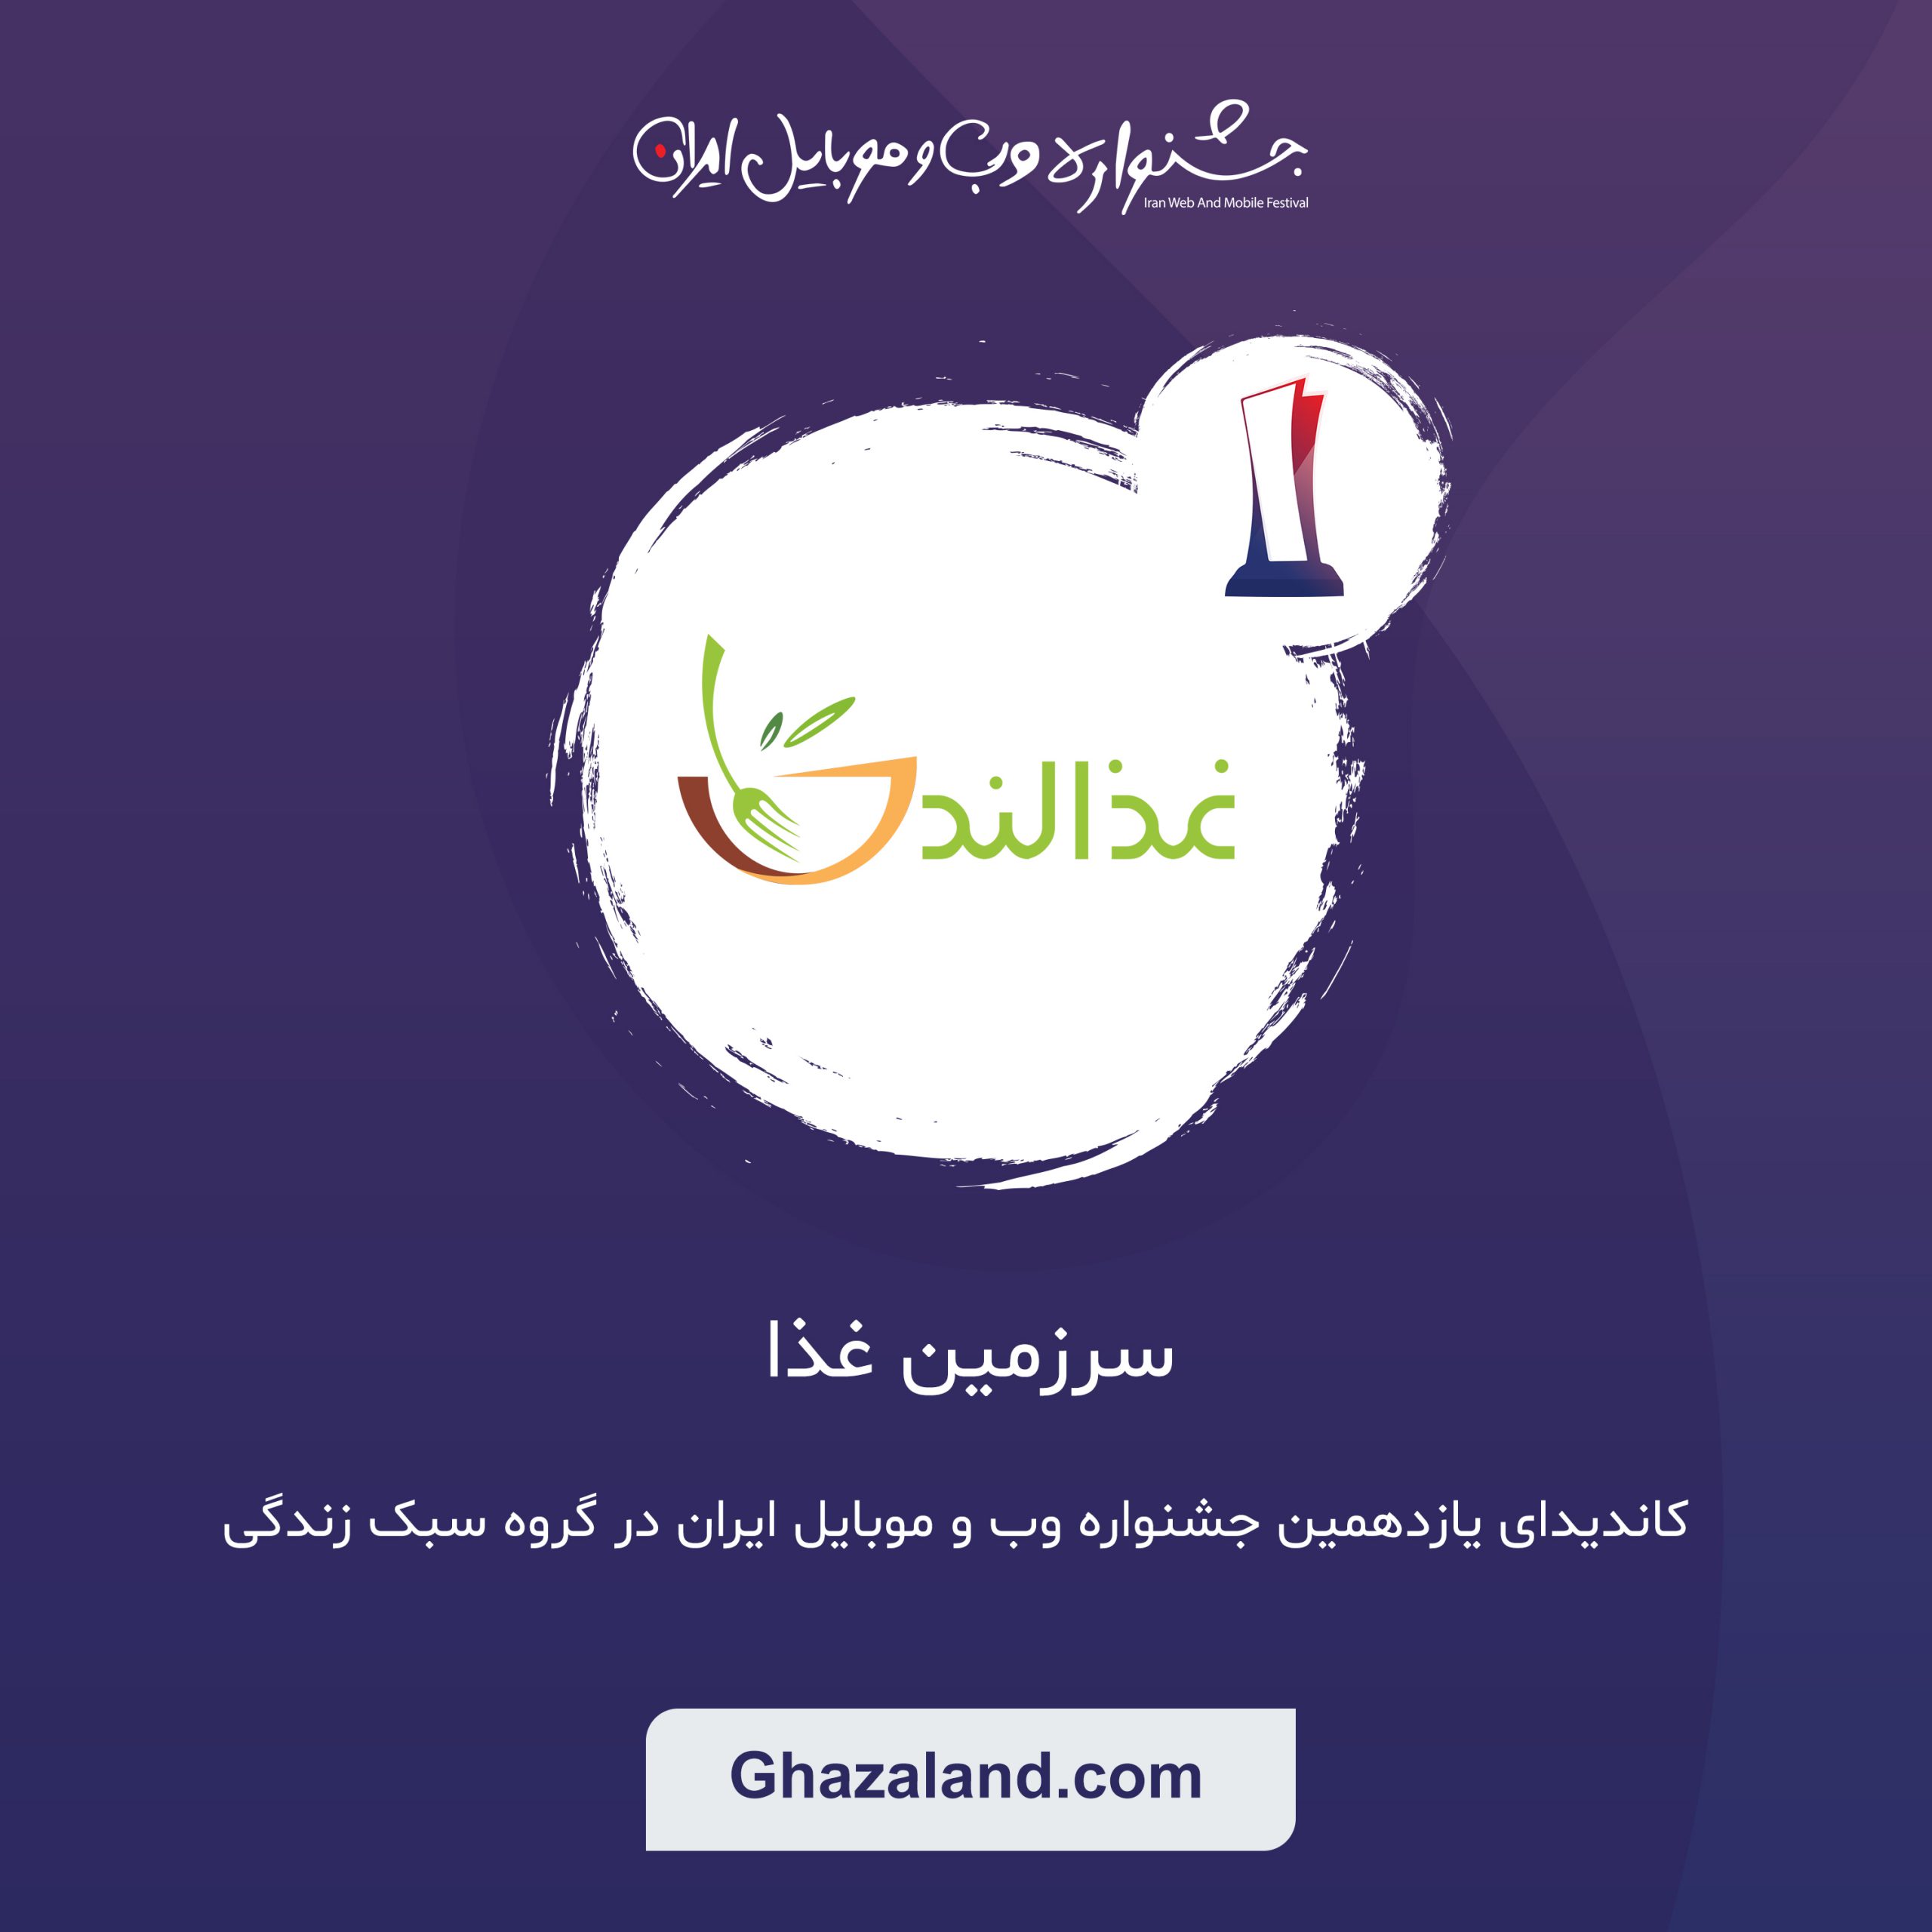 غذالند، جزو 5 سایت برتر گروه سبک زندگی در جشنواره وب و موبایل ایران